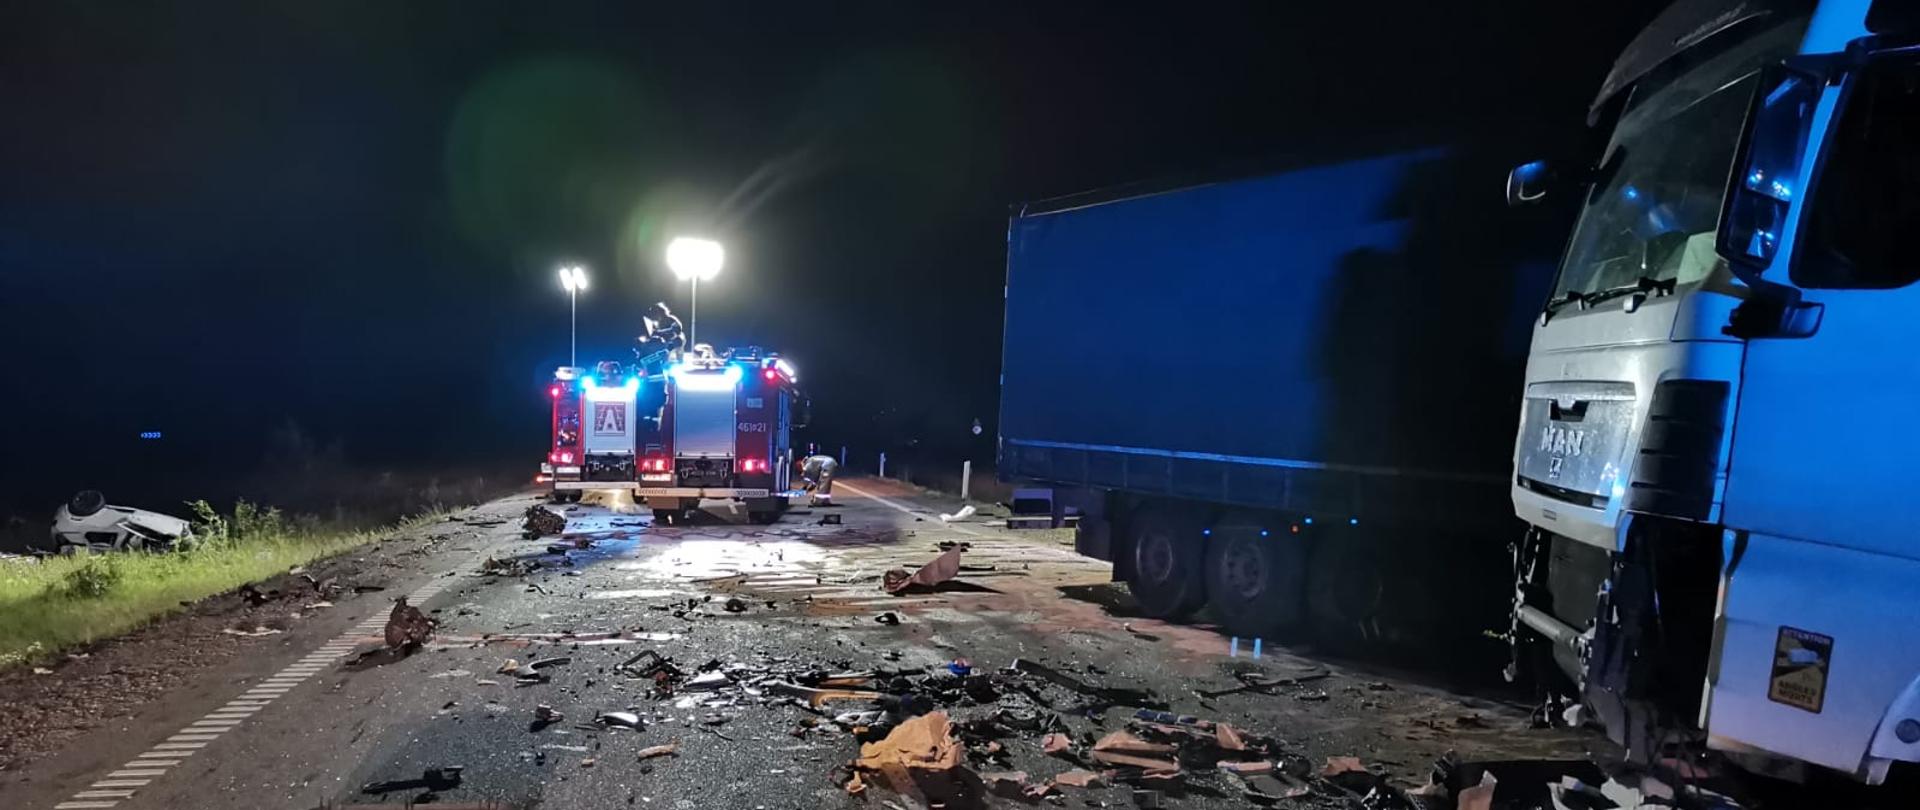 Samochód ciężarowy biorący udział w wypadku stoi w nocy na drodze, w tle dwa samochody pożarnicze.